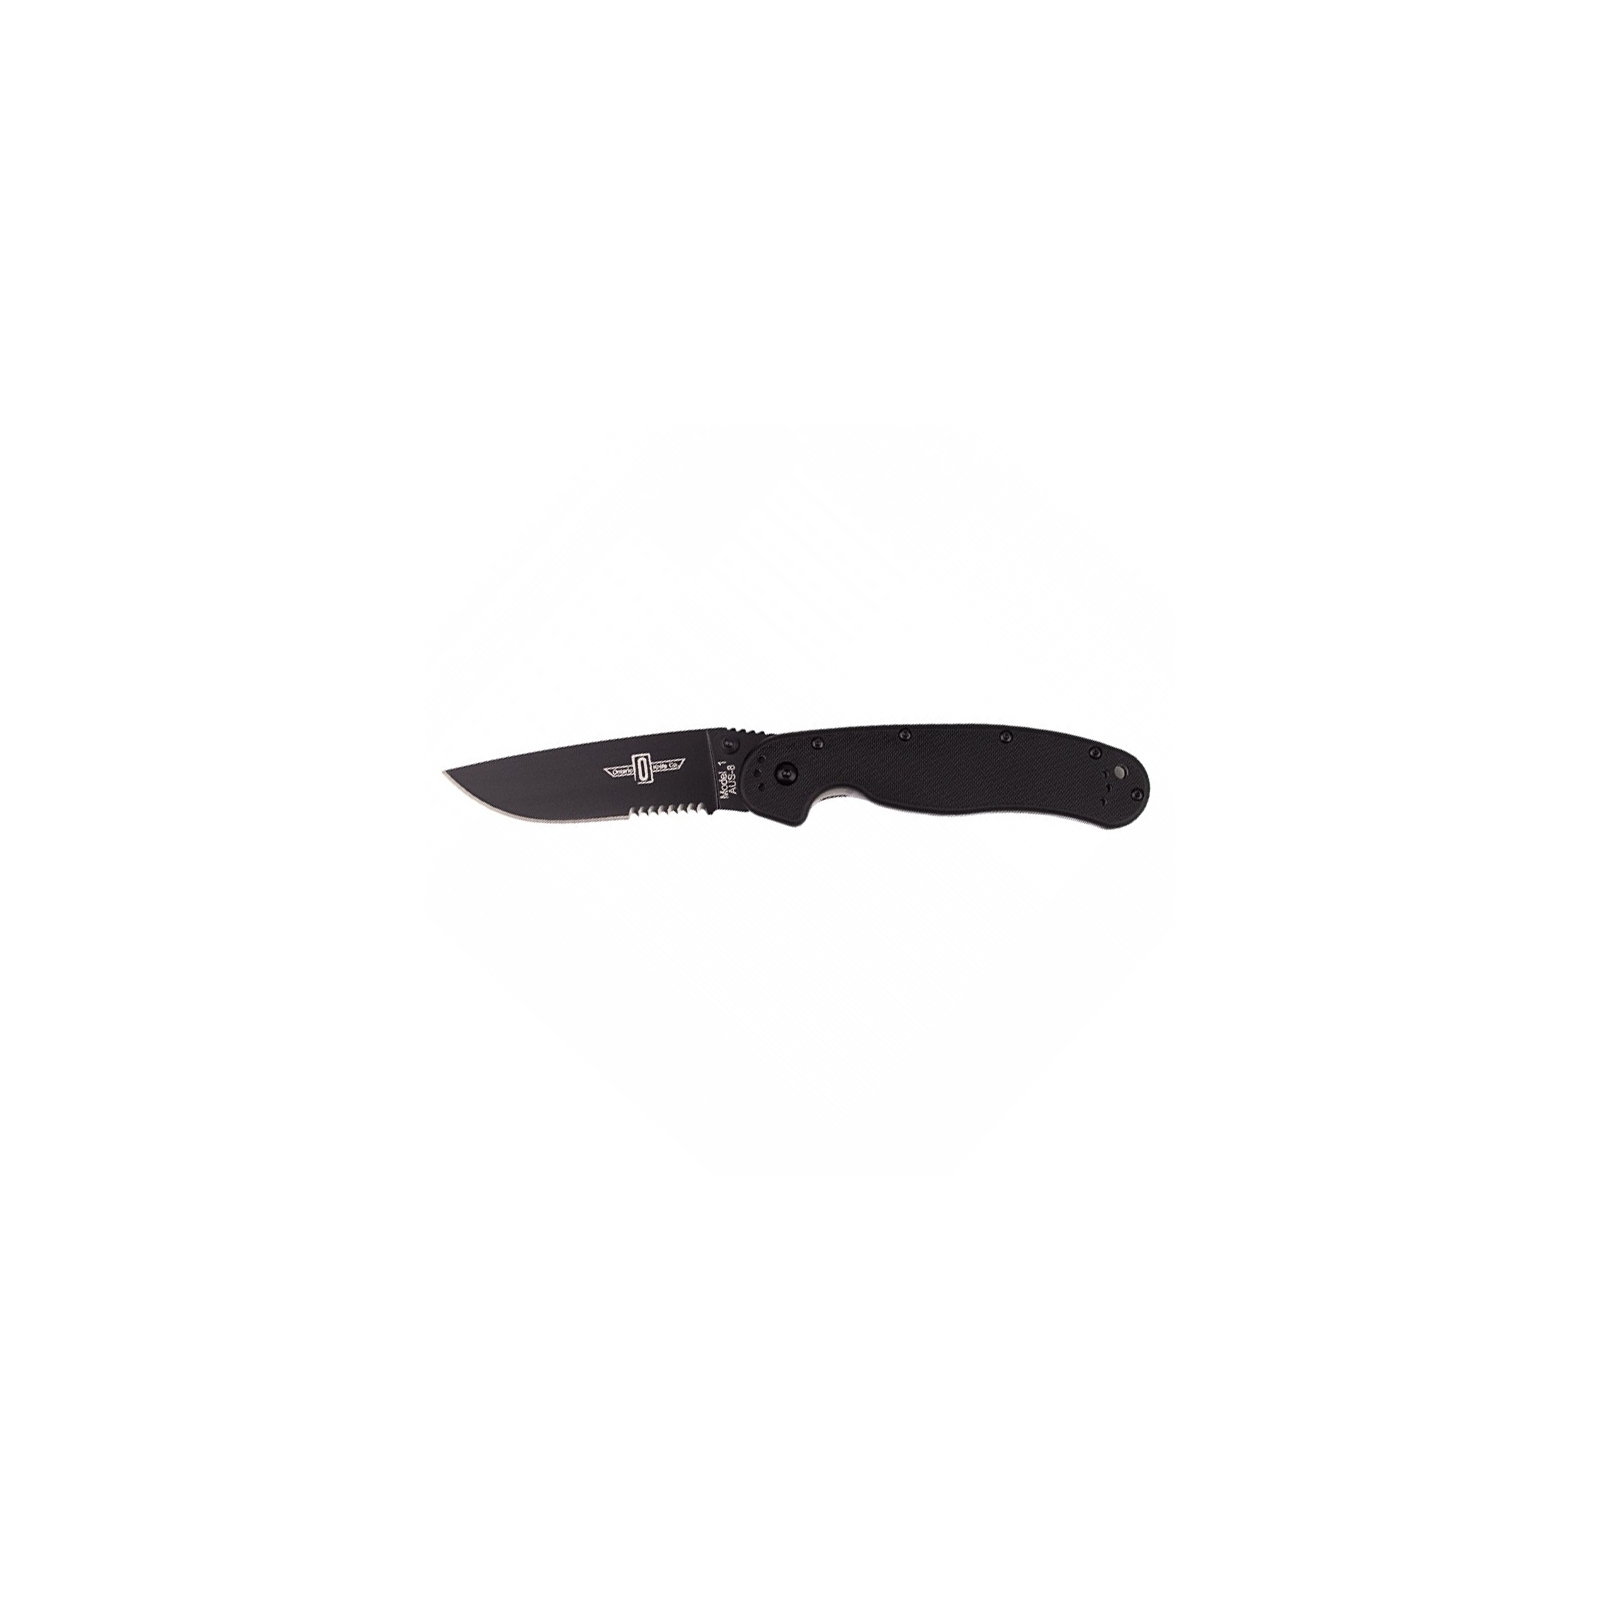 Нож Ontario RAT-1 Folder, черный, полусеррейтор (8847)